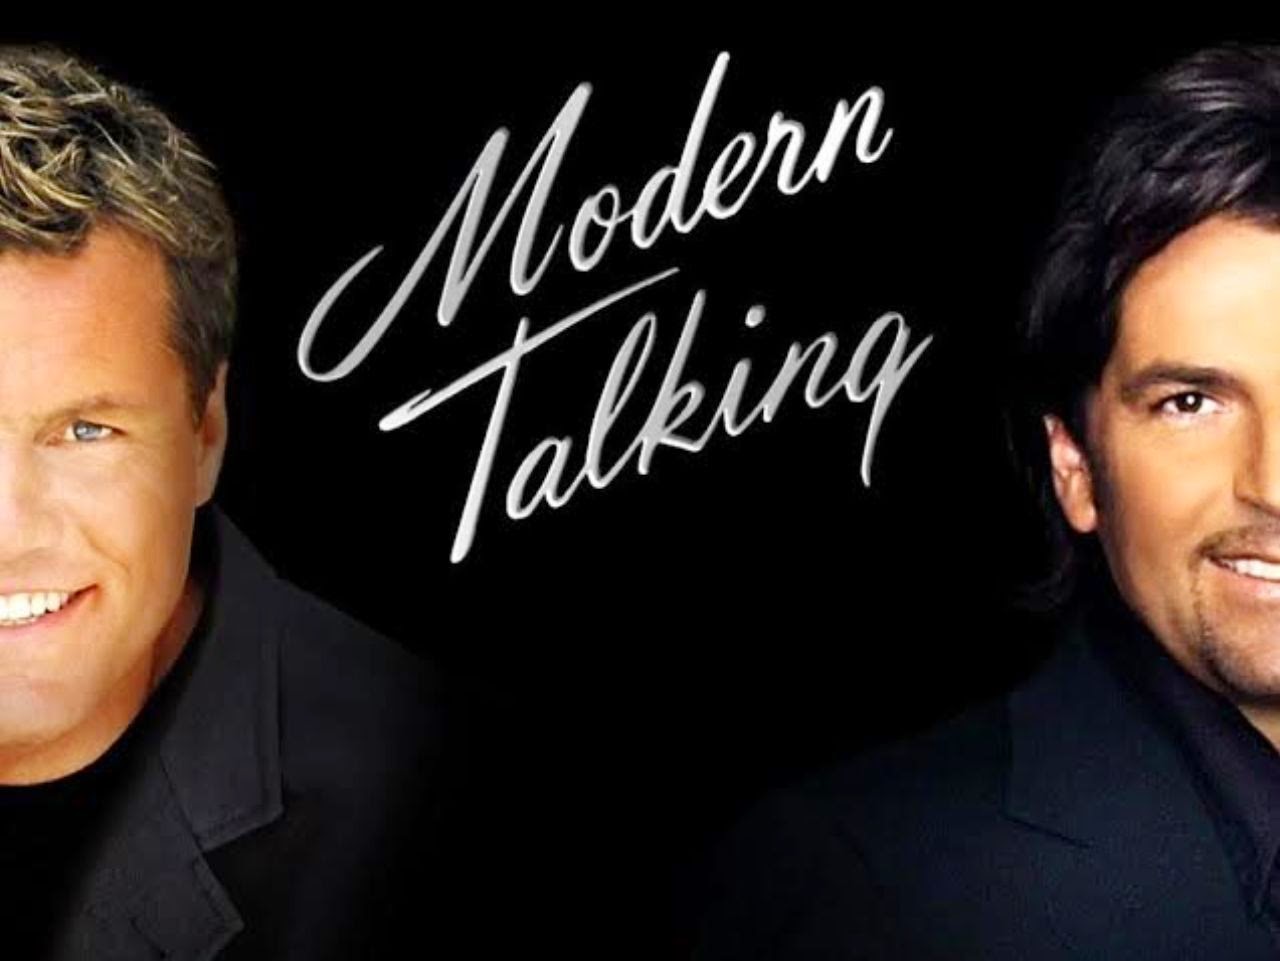 Модерн токинг в современной обработке слушать. Группа Modern talking. Modern talking 1996. Солист Модерн токинг. Группа Modern talking 2021.